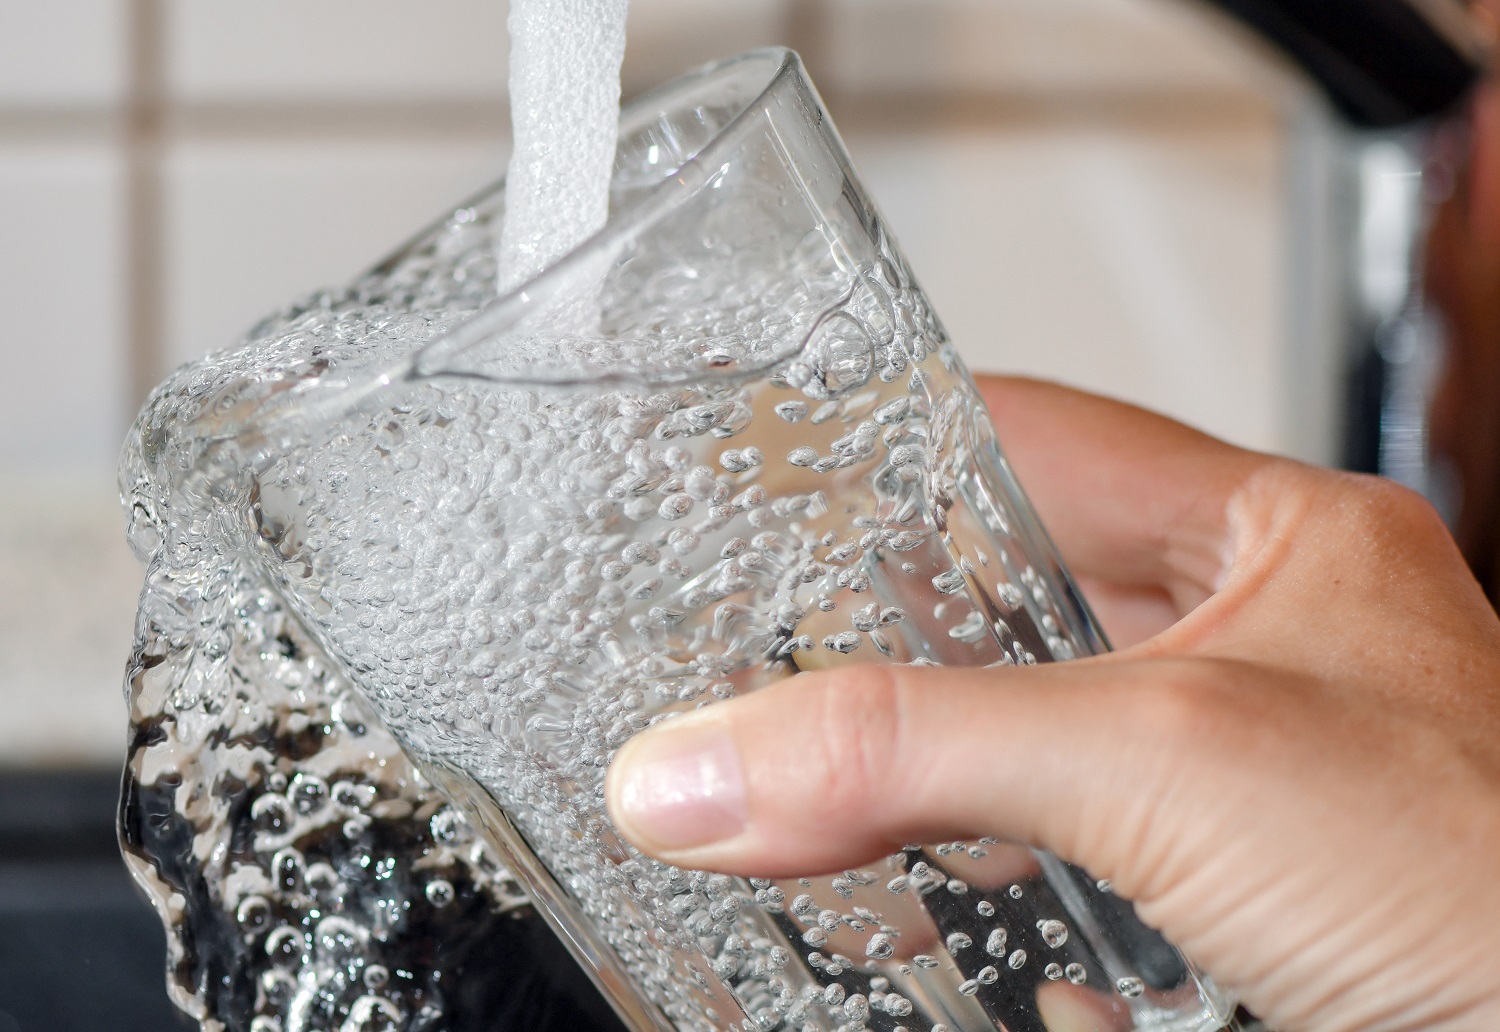 Биохимик рассказала, как в домашних условиях проверить качество воды из-под крана